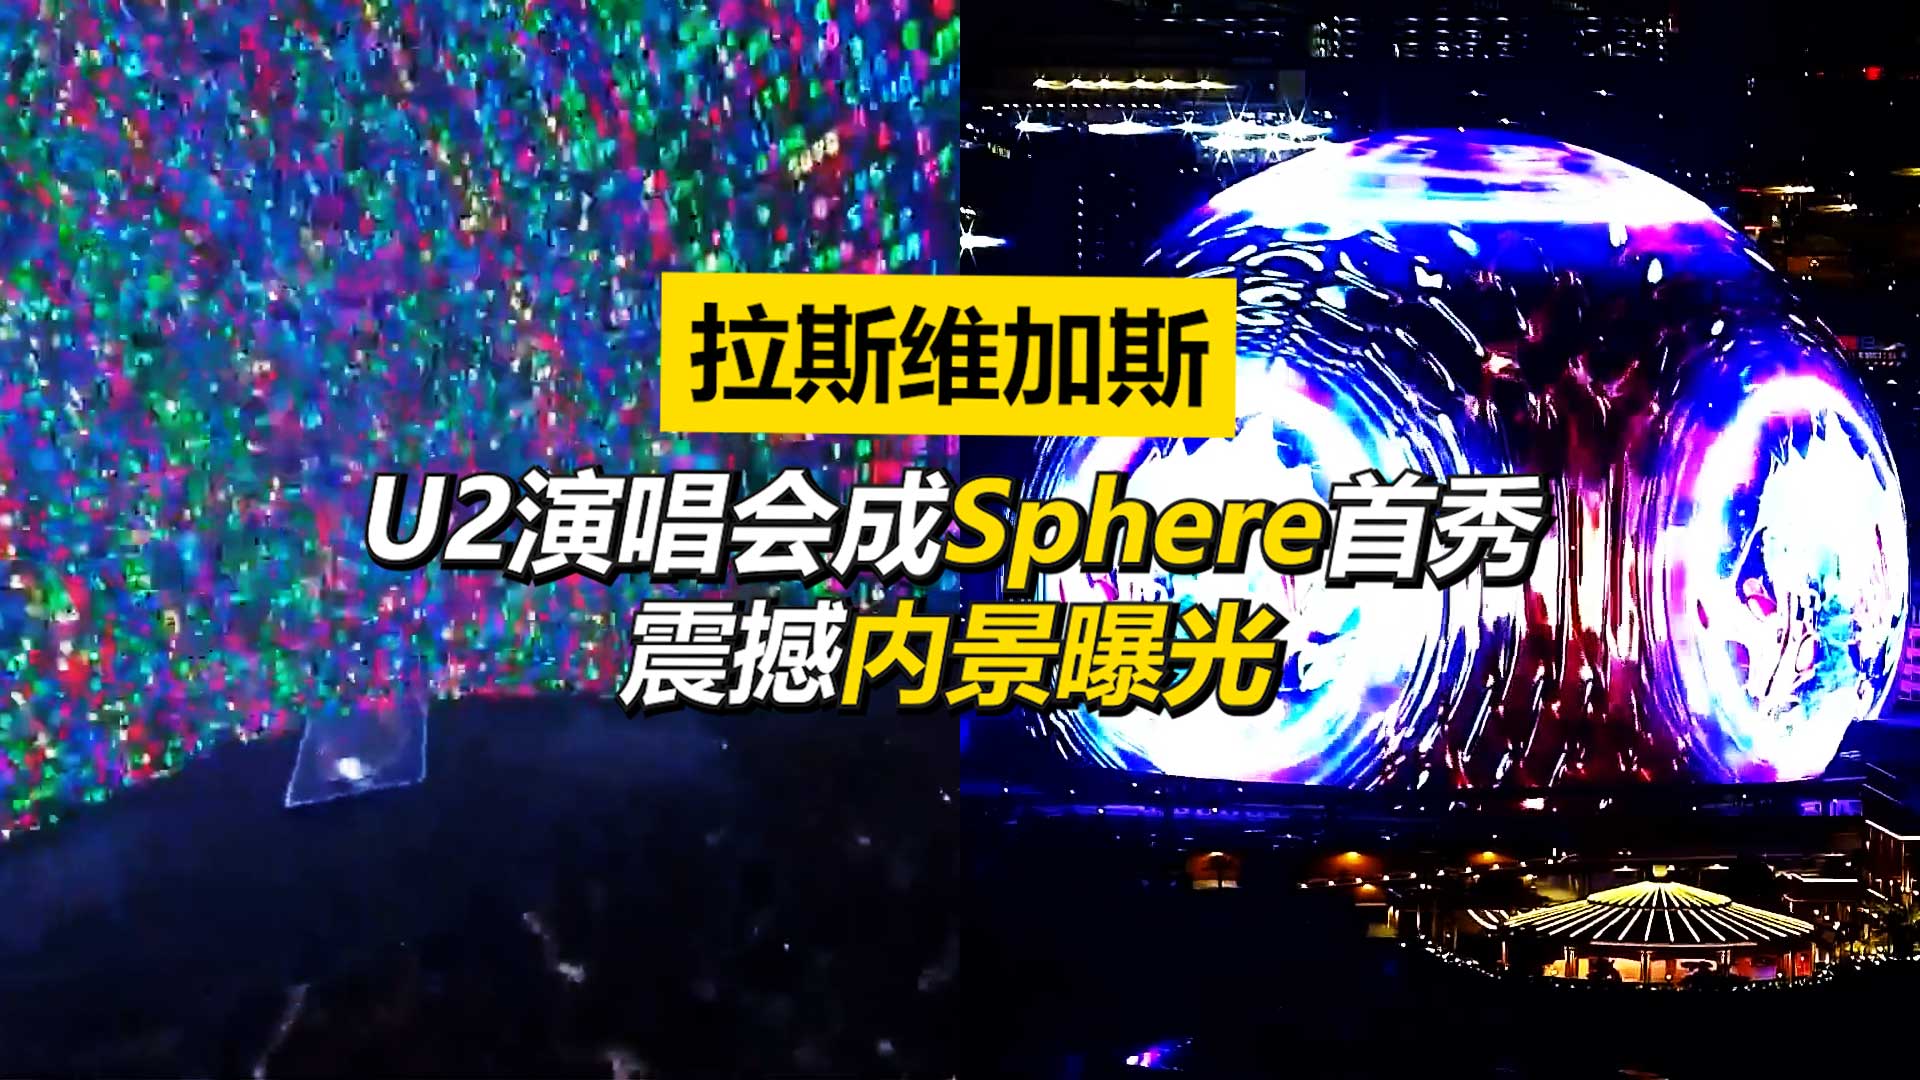 赌城Sphere首秀U2演唱会  震撼内景曝光